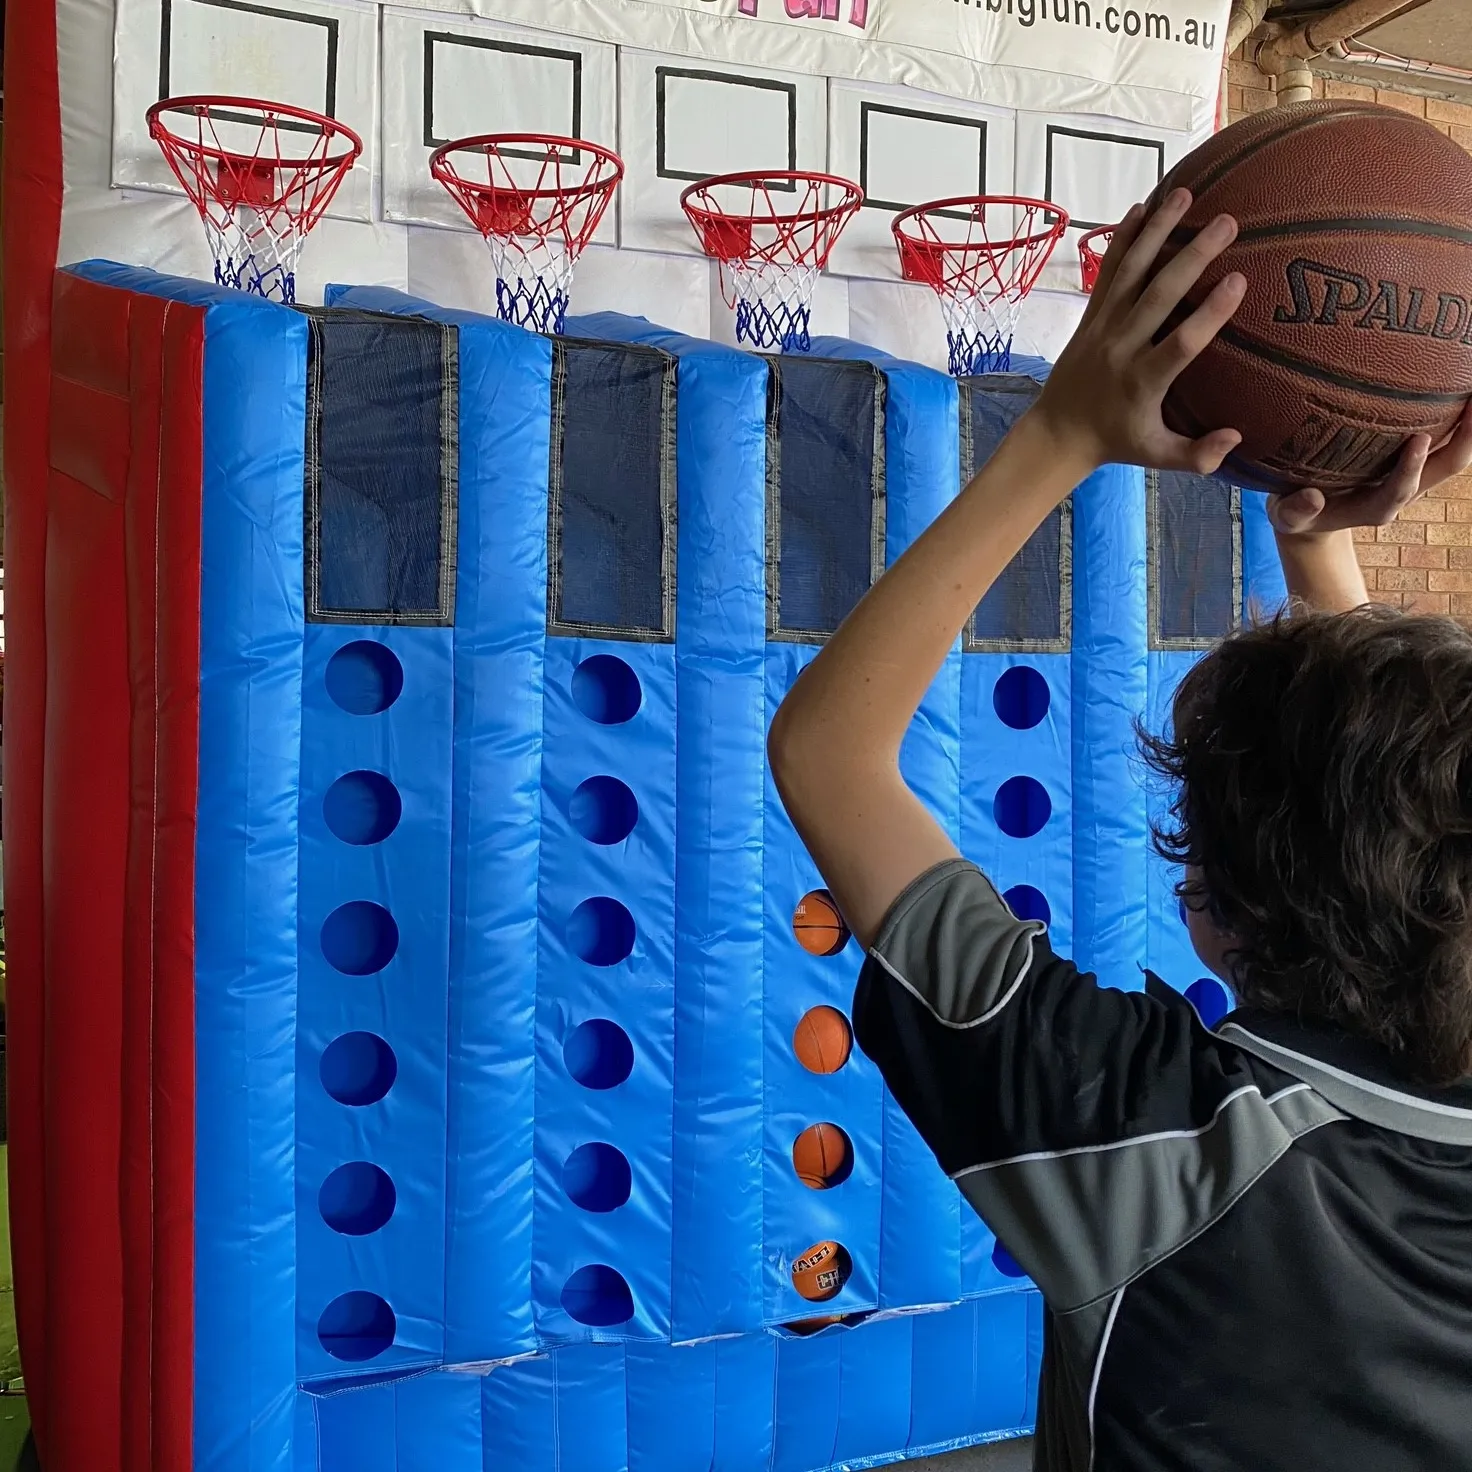 Juego inflable para jugar al baloncesto, juego popular para conectar 4 juegos de carnaval